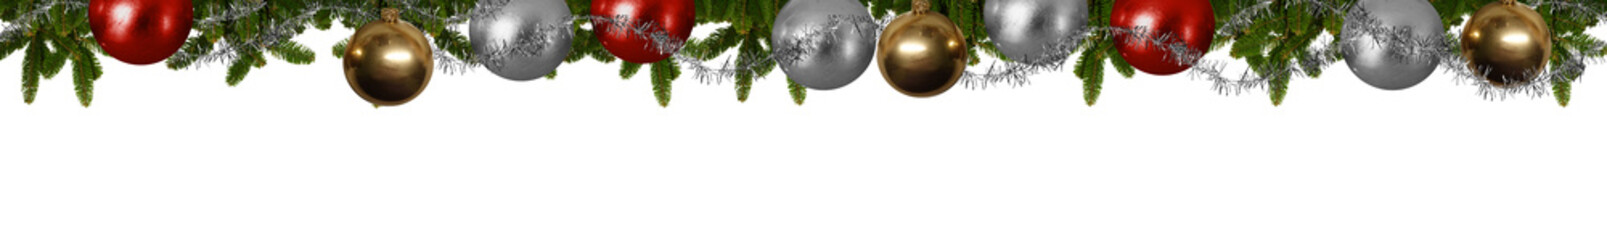 Weihnachtliches Panorama - Tannenzweige mit Christbaumkugeln